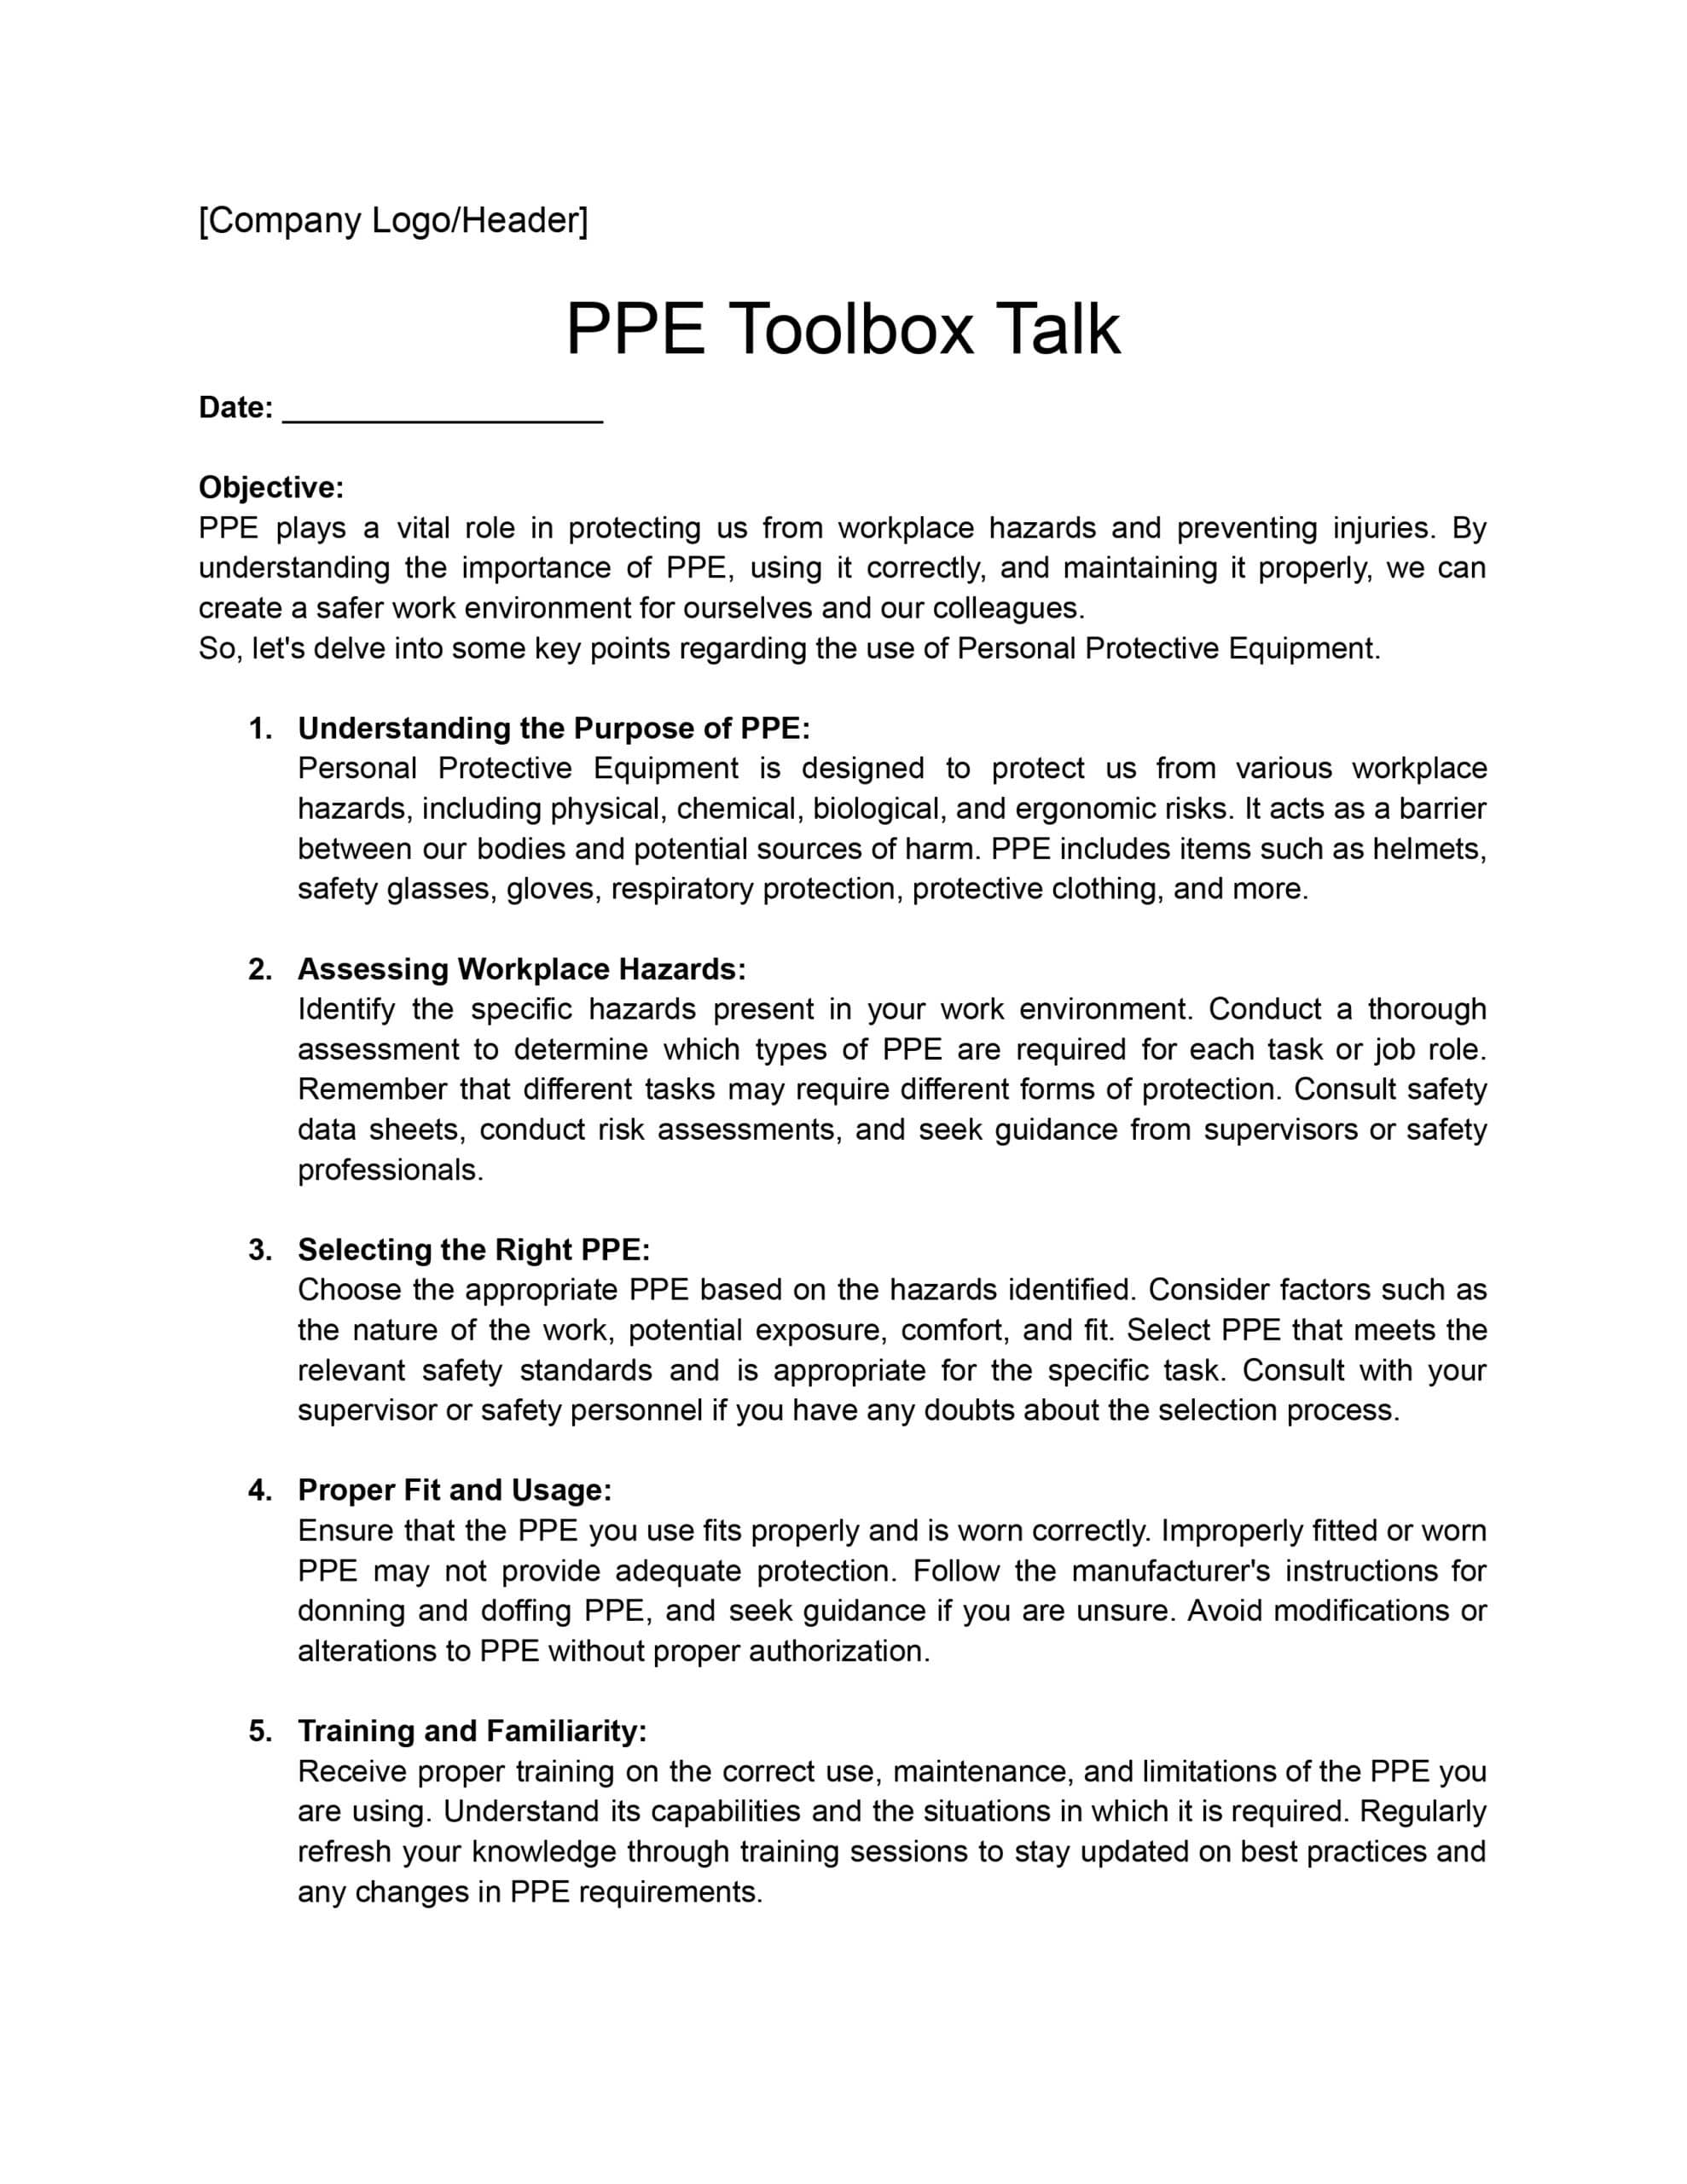 PPE Toolbox Talk